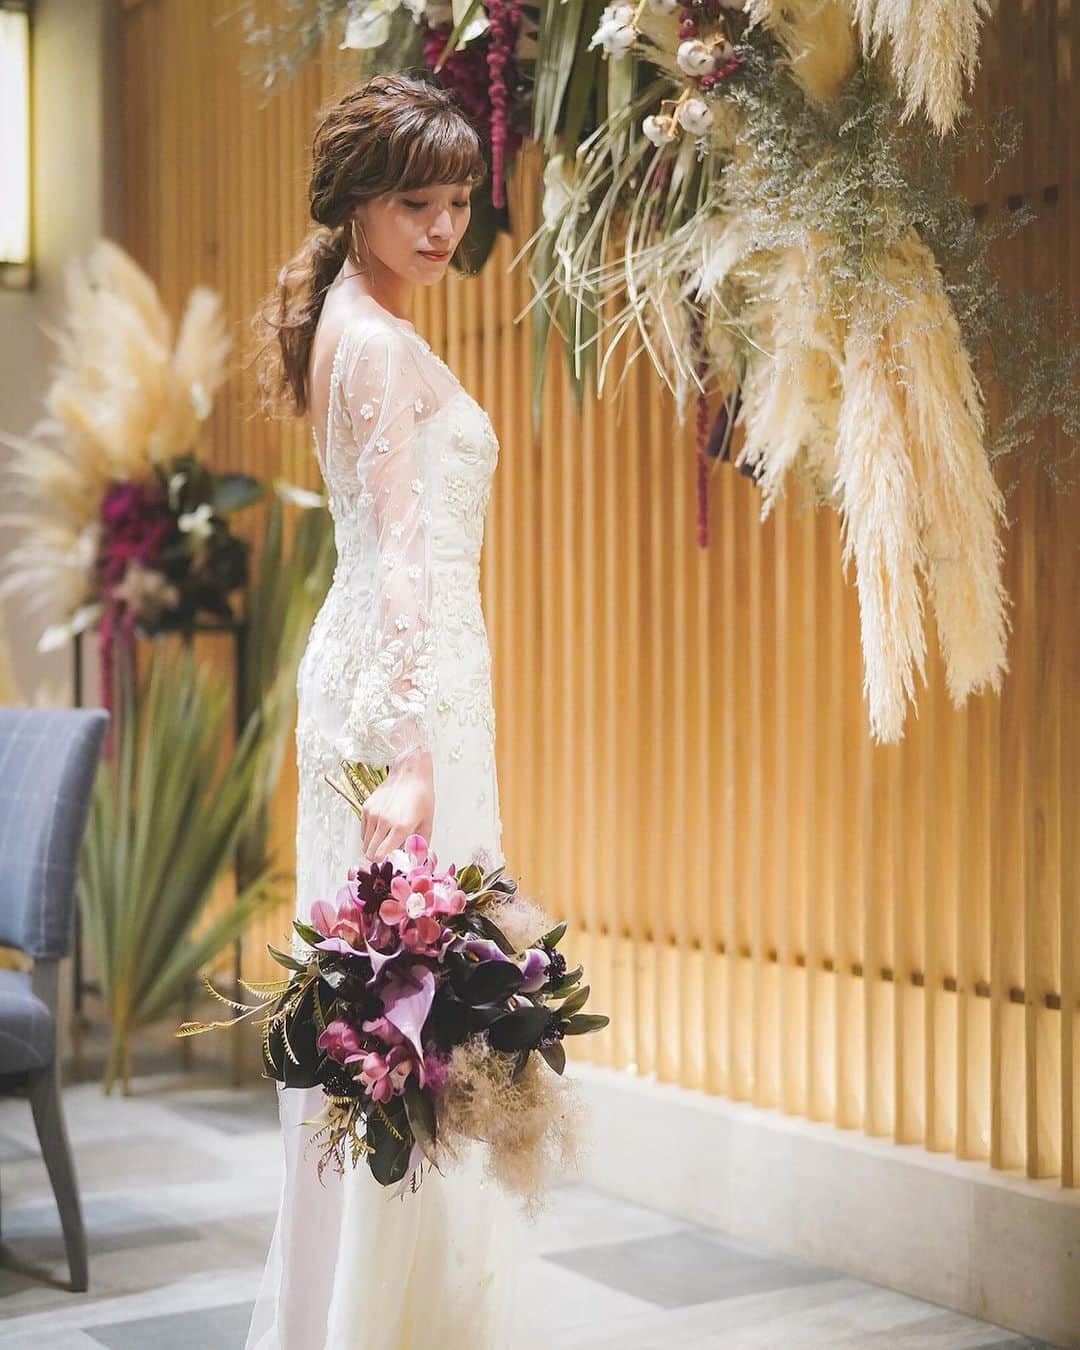 ARCH DAYS Weddingsさんのインスタグラム写真 - (ARCH DAYS WeddingsInstagram)「おしゃれ上級者は #ロングスリーブドレス を選ぶ！﻿﻿ トレンドのカジュアルな着こなしをご紹介💁‍♀️✨﻿﻿ ﻿﻿ ▽ARCH DAYSトップページはこちらから☑﻿﻿﻿﻿﻿﻿﻿﻿﻿﻿﻿﻿﻿﻿﻿﻿﻿﻿﻿﻿﻿﻿﻿﻿﻿﻿﻿ @archdays_weddings﻿﻿﻿﻿﻿﻿﻿﻿﻿﻿﻿﻿﻿﻿﻿﻿﻿﻿﻿﻿﻿﻿﻿﻿﻿﻿﻿﻿ プロフィールのリンクから👰🏻﻿﻿﻿﻿﻿﻿﻿﻿﻿﻿﻿﻿﻿﻿﻿﻿﻿﻿﻿﻿﻿﻿﻿﻿﻿﻿﻿﻿ ﻿﻿﻿﻿﻿﻿﻿﻿﻿﻿﻿﻿﻿﻿﻿﻿﻿﻿﻿ ﻿﻿﻿﻿﻿﻿﻿﻿﻿﻿﻿﻿﻿﻿﻿﻿﻿﻿﻿﻿﻿ #archdays花嫁 をつけて投稿して頂いた方にサイト掲載のお声がけをさせて頂く場合があります🕊🌿﻿﻿﻿﻿﻿﻿﻿﻿﻿﻿﻿﻿﻿﻿﻿﻿﻿﻿﻿﻿﻿﻿﻿﻿﻿﻿﻿﻿ ﻿﻿﻿﻿﻿﻿﻿﻿﻿﻿﻿﻿﻿﻿﻿﻿﻿﻿﻿﻿﻿﻿﻿﻿﻿﻿﻿﻿ ﻿————————-//-﻿﻿﻿﻿﻿﻿﻿﻿﻿﻿﻿﻿﻿﻿﻿﻿﻿﻿﻿﻿﻿﻿﻿﻿﻿﻿﻿﻿﻿ いつもARCH DAYSをご覧いただきありがとうございます！﻿﻿﻿﻿﻿﻿﻿﻿﻿﻿﻿﻿﻿﻿﻿﻿﻿﻿﻿﻿﻿﻿﻿﻿﻿﻿﻿﻿﻿ ﻿﻿﻿﻿﻿﻿﻿﻿﻿﻿﻿﻿﻿﻿﻿﻿﻿﻿﻿﻿﻿﻿﻿﻿﻿﻿﻿﻿﻿ この度は、皆様に素敵な記事をさらに多くお届けできるよう、ライターさんを募集することになりました。﻿﻿﻿﻿﻿﻿﻿﻿﻿﻿﻿﻿﻿﻿﻿﻿﻿﻿﻿﻿﻿﻿﻿﻿﻿﻿﻿﻿﻿ 結婚式に関わる素敵なオリジナル記事を描いてくださるライター様は奮ってご応募くださいませ☺﻿﻿﻿﻿﻿﻿﻿﻿﻿﻿﻿﻿﻿﻿﻿﻿﻿﻿﻿﻿﻿﻿﻿﻿﻿﻿﻿﻿﻿ ﻿﻿﻿﻿﻿﻿﻿﻿﻿﻿﻿﻿﻿﻿﻿﻿﻿﻿﻿﻿﻿﻿﻿﻿﻿﻿﻿﻿﻿ *************﻿﻿﻿﻿﻿﻿﻿﻿﻿﻿﻿﻿﻿﻿﻿﻿﻿﻿﻿﻿﻿﻿﻿﻿﻿﻿﻿﻿﻿ ◆応募の仕方﻿﻿﻿﻿﻿﻿﻿﻿﻿﻿﻿﻿﻿﻿﻿﻿﻿﻿﻿﻿﻿﻿﻿﻿﻿﻿﻿﻿﻿ ARCH DAYS公式サイトのライター募集のリンクバナー、もしくは最下部のWEDDING ライター募集という項目をクリックしていただき、応募フォームに必要事項を入れ完了してください﻿﻿﻿﻿﻿﻿﻿﻿﻿﻿﻿﻿﻿﻿﻿﻿﻿﻿﻿﻿﻿﻿﻿﻿﻿﻿﻿﻿﻿ *************﻿﻿﻿﻿﻿﻿﻿﻿﻿﻿﻿﻿﻿﻿﻿﻿﻿﻿﻿﻿﻿﻿﻿﻿﻿﻿﻿﻿﻿ ﻿﻿﻿﻿﻿﻿﻿﻿﻿﻿﻿﻿﻿﻿﻿﻿﻿﻿﻿﻿﻿﻿﻿﻿﻿﻿﻿﻿﻿ 私たちと一緒にARCH DAYSの素敵な世界観を作っていきませんか？﻿﻿﻿﻿﻿﻿﻿﻿﻿﻿﻿﻿﻿﻿﻿﻿﻿﻿﻿﻿﻿﻿﻿﻿﻿﻿﻿﻿﻿ たくさんのご応募お待ちしております♡﻿﻿﻿﻿﻿﻿﻿﻿﻿﻿﻿﻿﻿﻿﻿﻿﻿﻿﻿﻿﻿﻿﻿﻿﻿﻿﻿﻿﻿ ﻿﻿﻿﻿﻿﻿﻿﻿﻿﻿﻿﻿﻿﻿﻿﻿﻿﻿﻿﻿﻿﻿﻿﻿﻿﻿﻿﻿﻿ ARCH DAYS編集部 ﻿﻿﻿﻿﻿﻿﻿﻿﻿﻿﻿﻿﻿﻿﻿﻿﻿﻿﻿﻿﻿﻿﻿﻿﻿﻿﻿﻿﻿ ————————-//-﻿﻿﻿﻿﻿﻿﻿﻿﻿﻿﻿﻿﻿﻿﻿﻿﻿﻿﻿﻿﻿﻿﻿﻿﻿﻿﻿﻿﻿ ﻿﻿﻿﻿﻿﻿﻿﻿﻿﻿﻿﻿﻿﻿﻿﻿﻿﻿﻿﻿﻿﻿﻿﻿﻿﻿﻿﻿ ﻿﻿﻿﻿﻿﻿﻿﻿﻿﻿﻿﻿﻿﻿﻿﻿﻿﻿﻿﻿﻿﻿﻿﻿﻿﻿﻿ ▽バースデー・ベビーシャワーなどの情報を見るなら💁🎉﻿﻿﻿﻿﻿﻿﻿﻿﻿﻿﻿﻿﻿﻿﻿﻿﻿﻿﻿﻿﻿﻿﻿﻿﻿﻿﻿﻿ @archdays﻿﻿﻿﻿﻿﻿﻿﻿﻿﻿﻿﻿﻿﻿﻿﻿﻿﻿﻿﻿﻿﻿﻿﻿﻿﻿﻿﻿ ﻿﻿﻿﻿﻿﻿﻿﻿﻿﻿﻿﻿﻿﻿﻿﻿﻿﻿ ----------------------﻿﻿﻿﻿﻿﻿﻿﻿﻿﻿﻿﻿﻿﻿﻿﻿﻿﻿﻿﻿﻿﻿﻿﻿﻿﻿﻿﻿﻿﻿﻿﻿﻿﻿﻿﻿﻿﻿﻿ #archdays #wedding #bridal #bride﻿ #jennypackham #jennypackhambride ##jennypackhamdress #ウェディングドレス #ドレス #ウェディングドレス選び #ウェディングドレス迷子 #ウェディングドレスショップ #ドレス選び #ドレス探し #ドレス迷子 #ジェニーパッカム #ジェニーパッカムアパッチ #結婚式 #ウェディング #ブライダル #プレ花嫁 #卒花嫁 #卒花 #2019春婚 #2019夏婚 #2019秋婚 #2019冬婚﻿﻿﻿﻿﻿﻿ ﻿﻿ ----------------------﻿﻿﻿﻿﻿﻿﻿﻿﻿﻿﻿﻿﻿﻿﻿﻿﻿﻿﻿﻿﻿﻿﻿﻿﻿﻿﻿﻿﻿﻿﻿﻿﻿﻿﻿﻿﻿﻿﻿﻿ https://archdays.com/column/2019/03/22/42332﻿﻿ ----------------------﻿﻿﻿﻿﻿﻿﻿﻿﻿﻿﻿﻿﻿﻿﻿﻿﻿﻿﻿﻿﻿﻿﻿﻿﻿﻿﻿﻿﻿﻿﻿﻿﻿﻿﻿﻿﻿﻿」4月18日 20時00分 - archdays_weddings